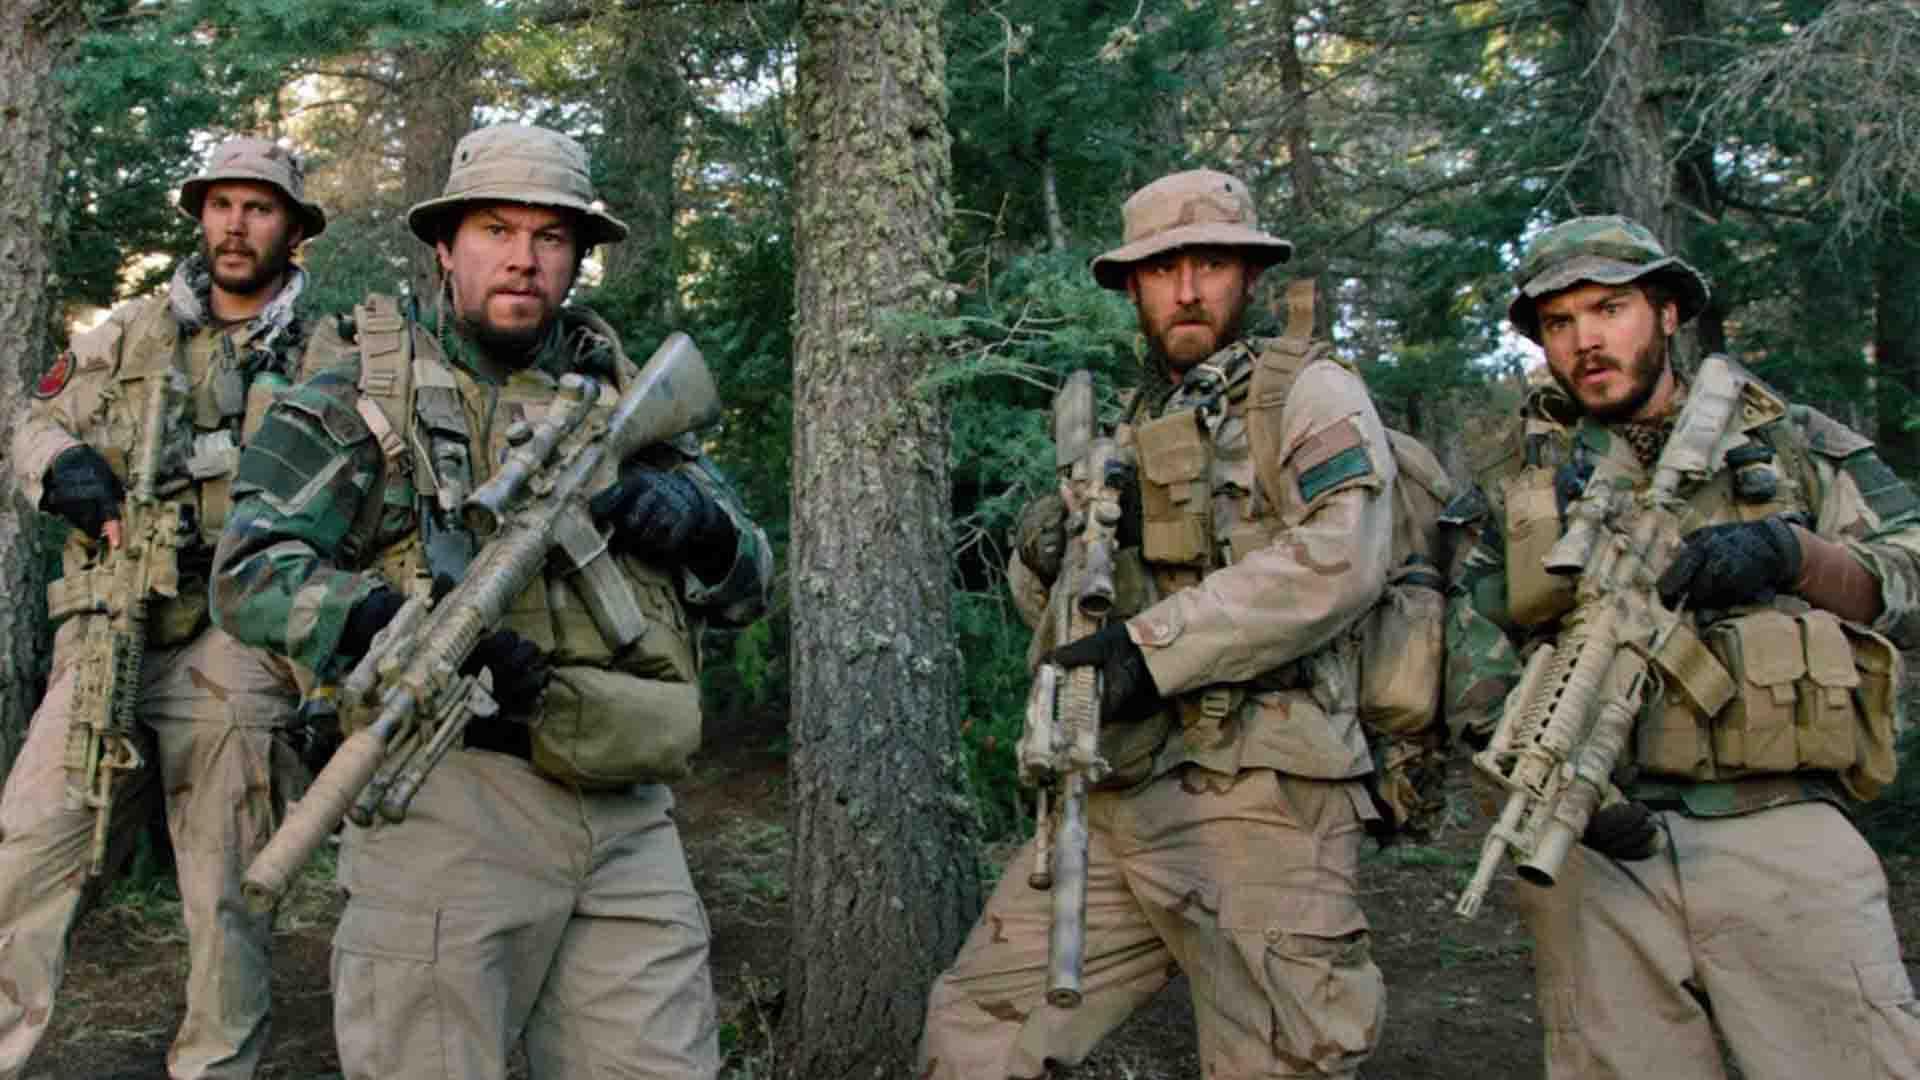 مارک والبرگ به همراه دیگر سربازان در فیلم Lone Survivor